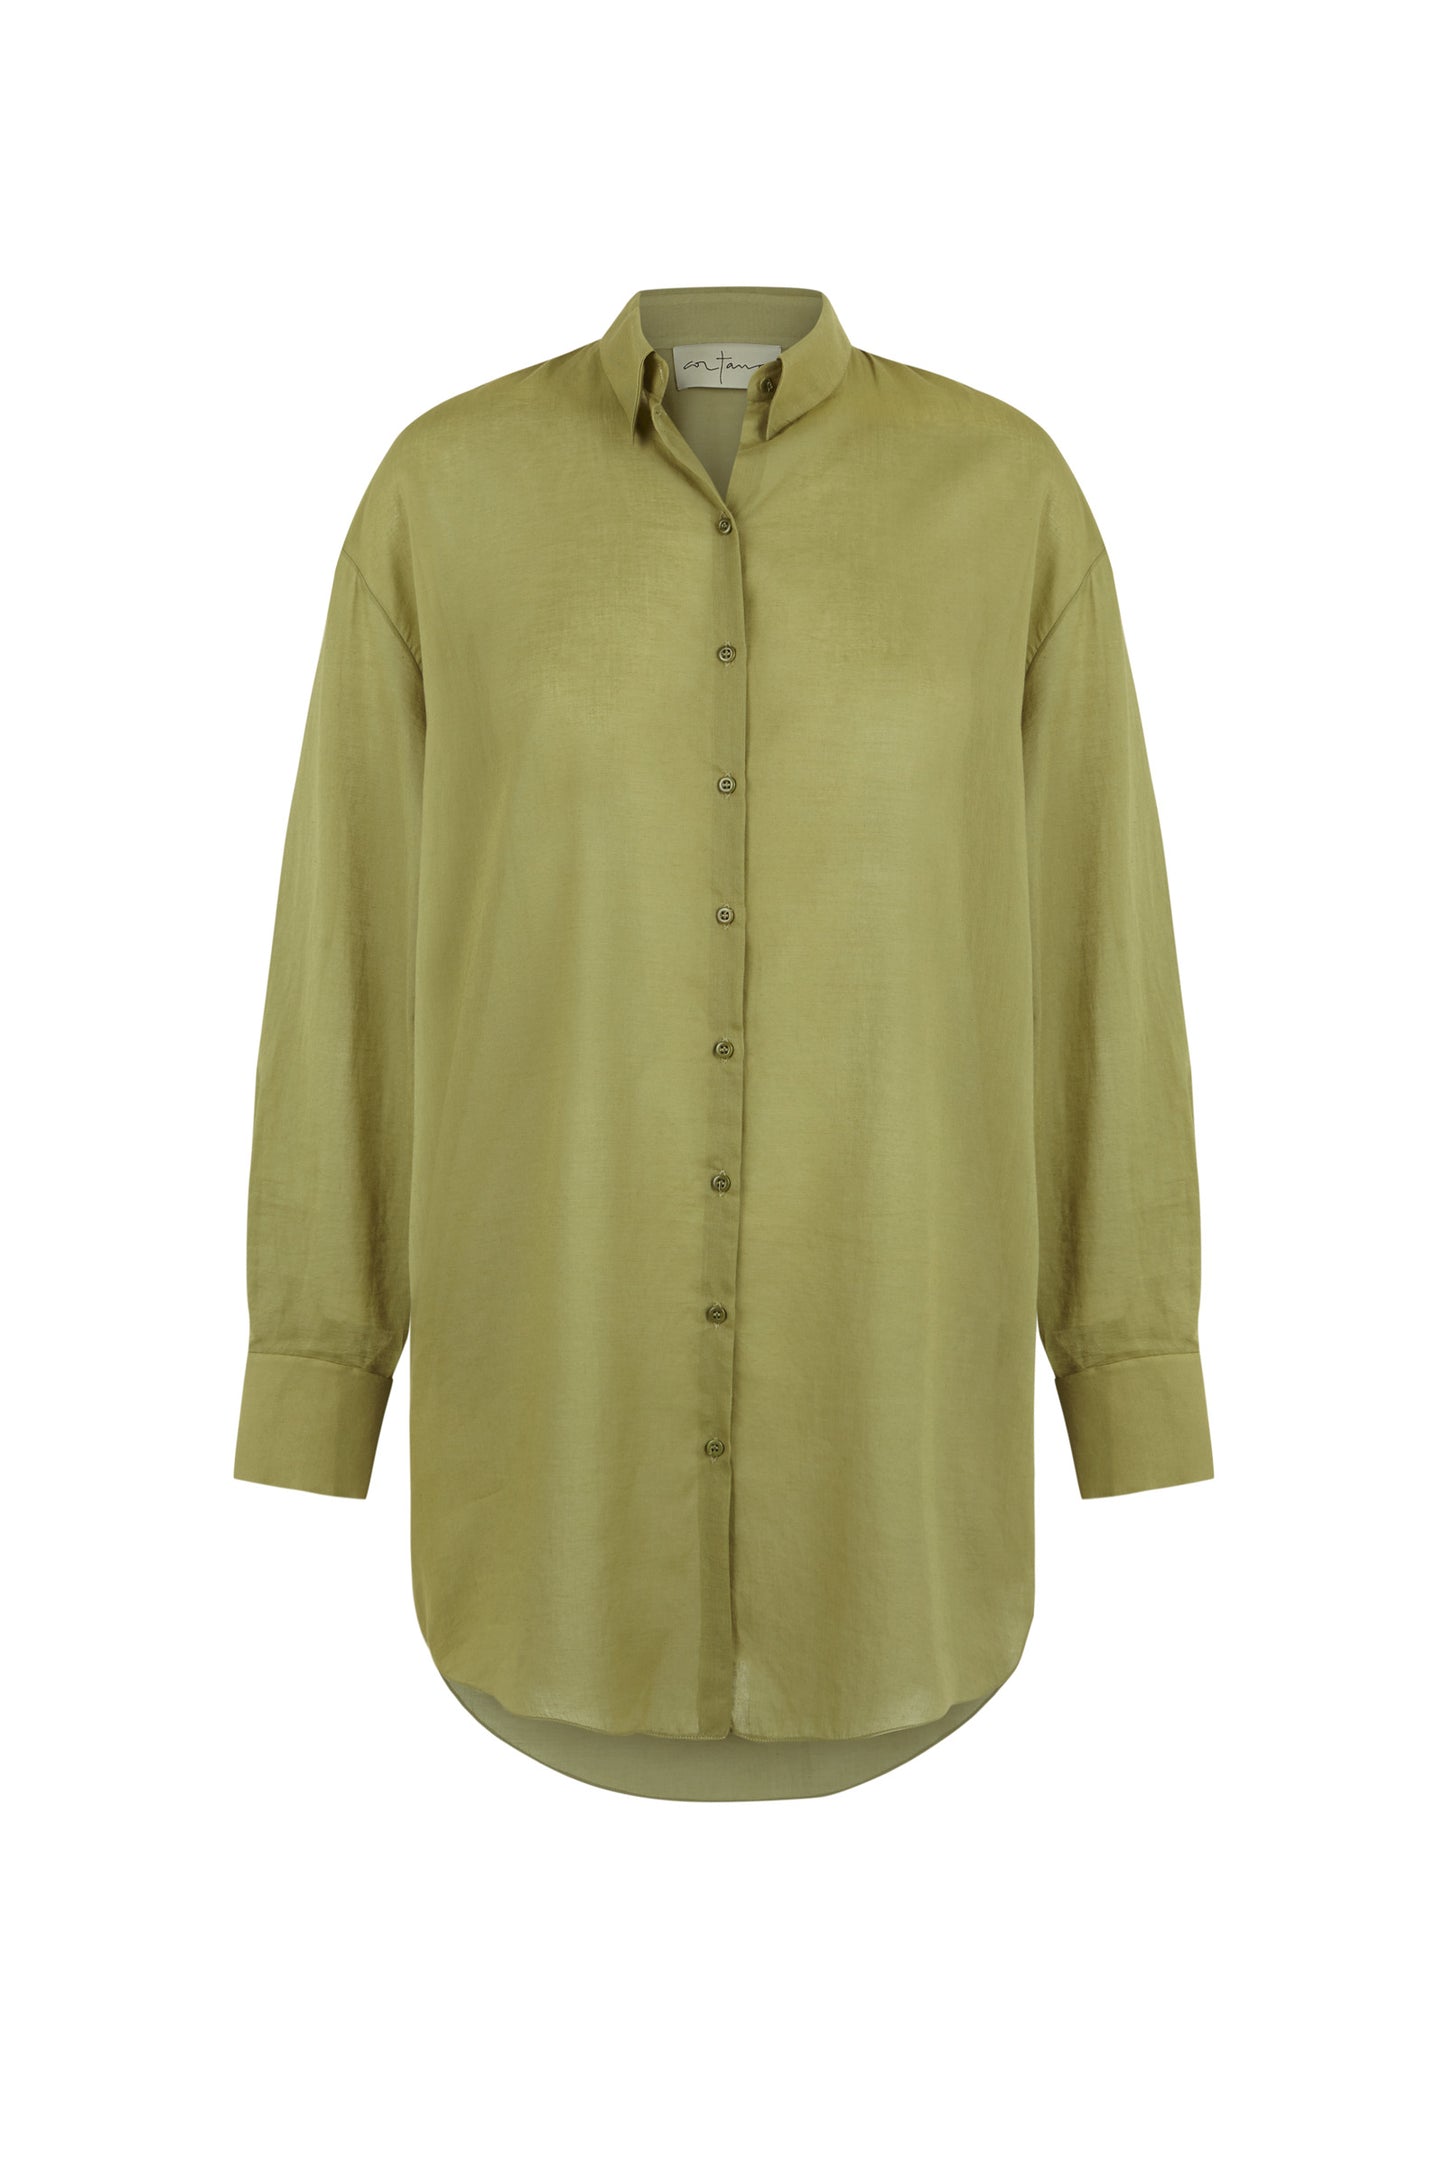 Matias, olive cotton voile shirt